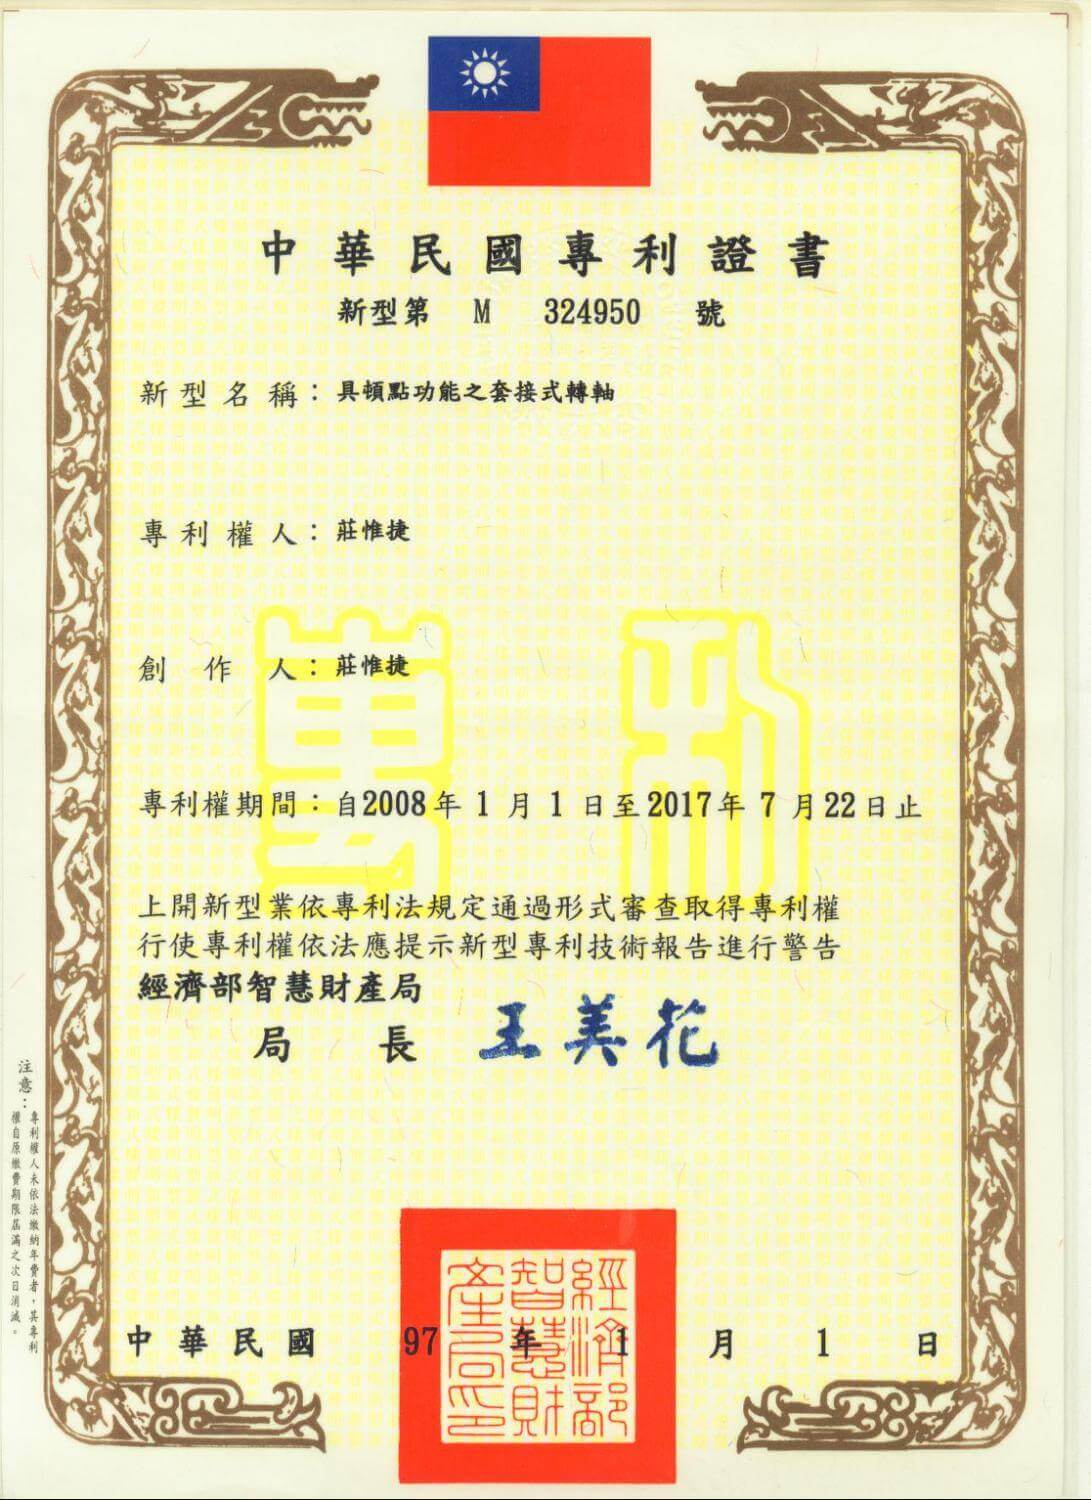 Chienfu-Tec CNC patents in Taiwan-24